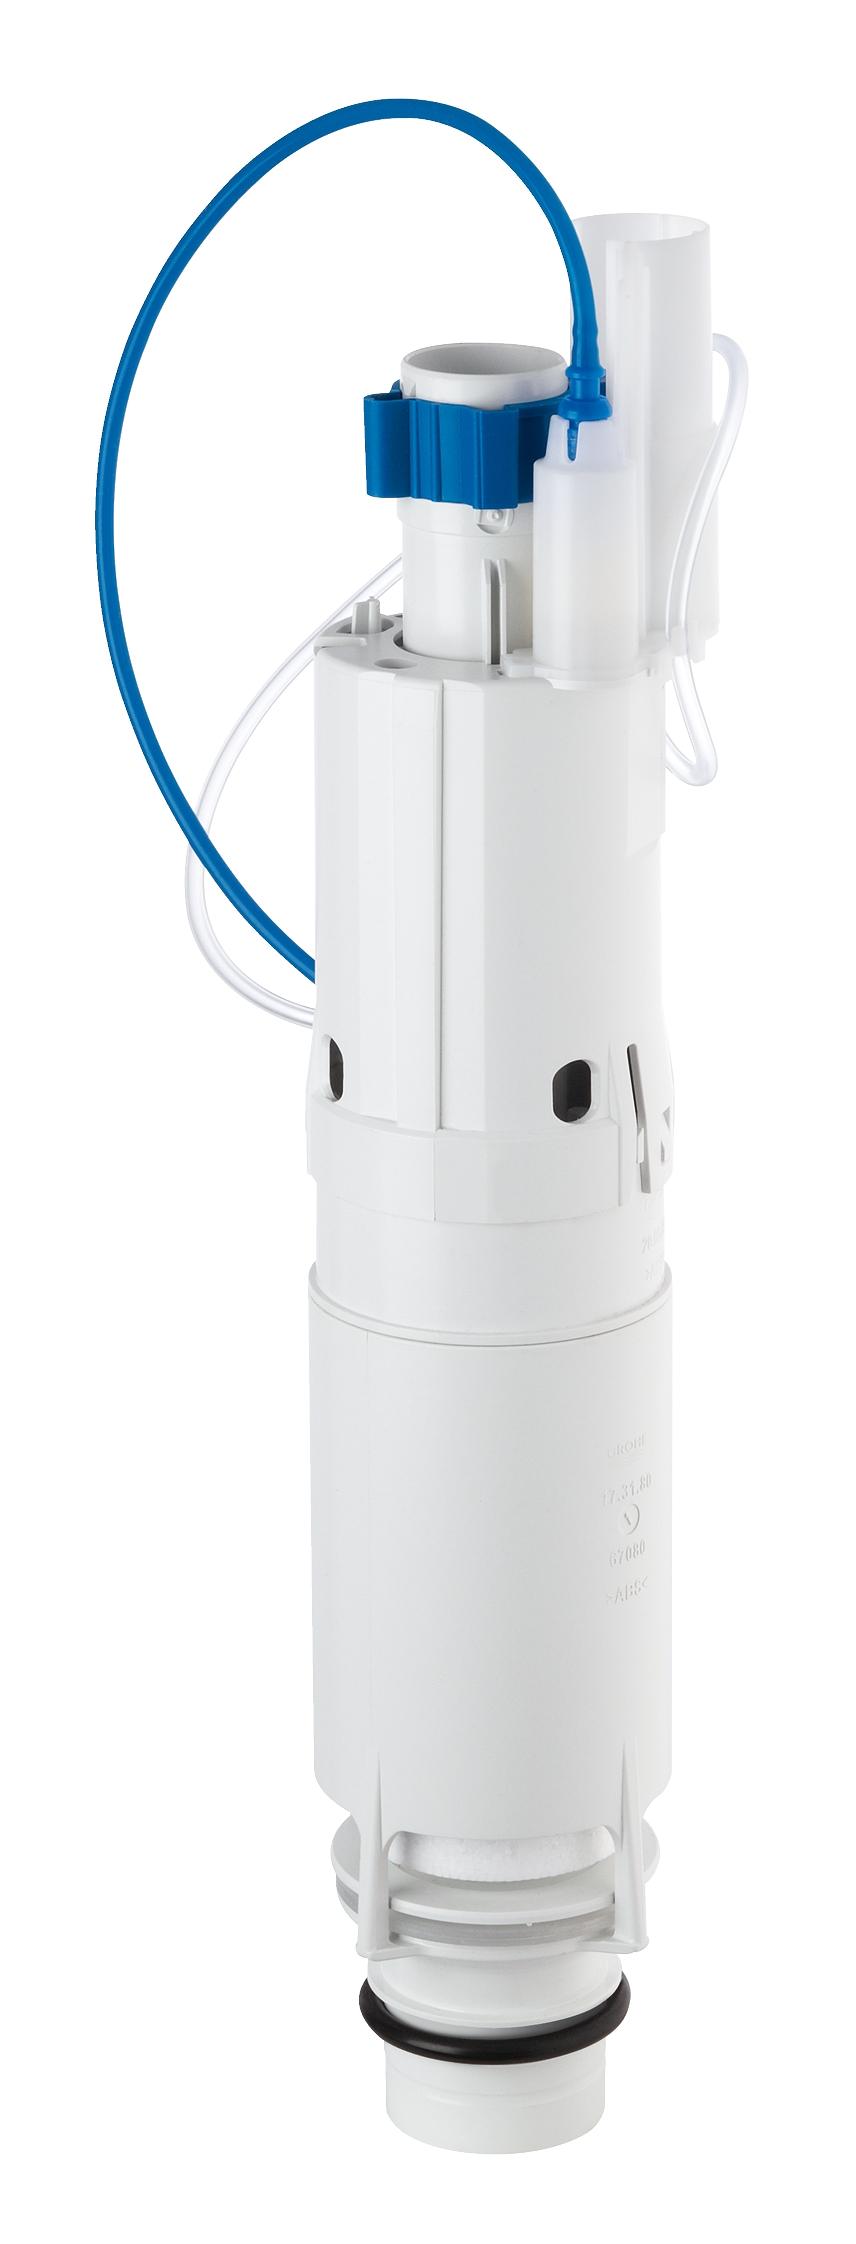 Вентиль сливной Grohe Ablaufventil (42253000) смывное устройство для писсуара laguraty